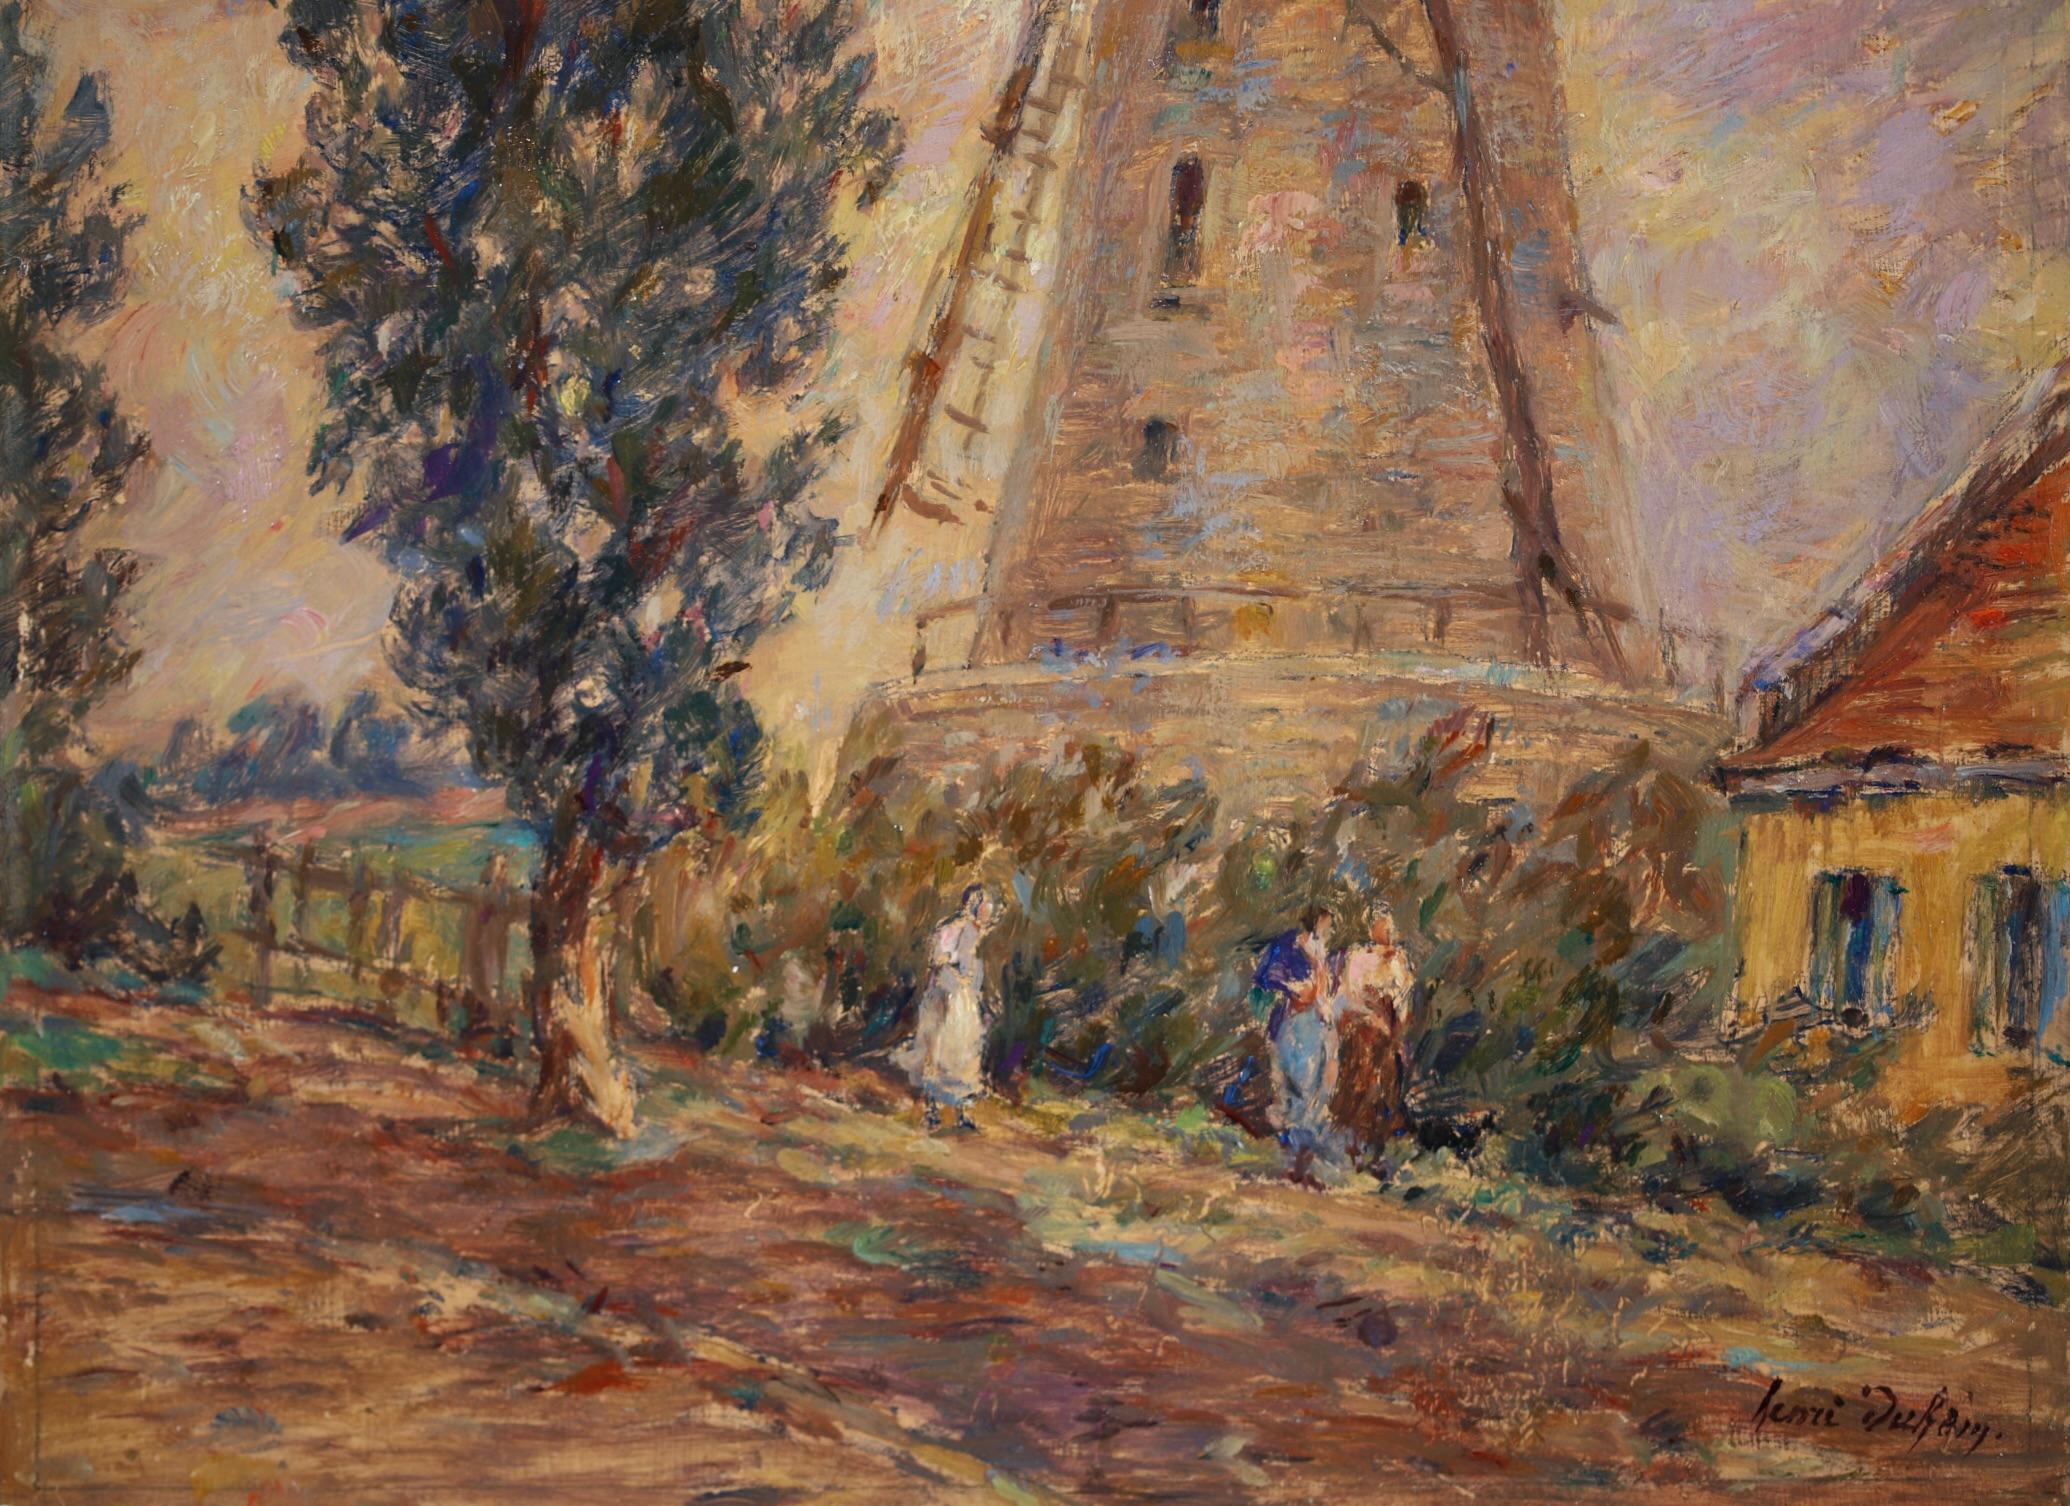 Moulin - Impressionist Oil, Windmill, Figures & Dog in Landscape by Henri Duhem 8